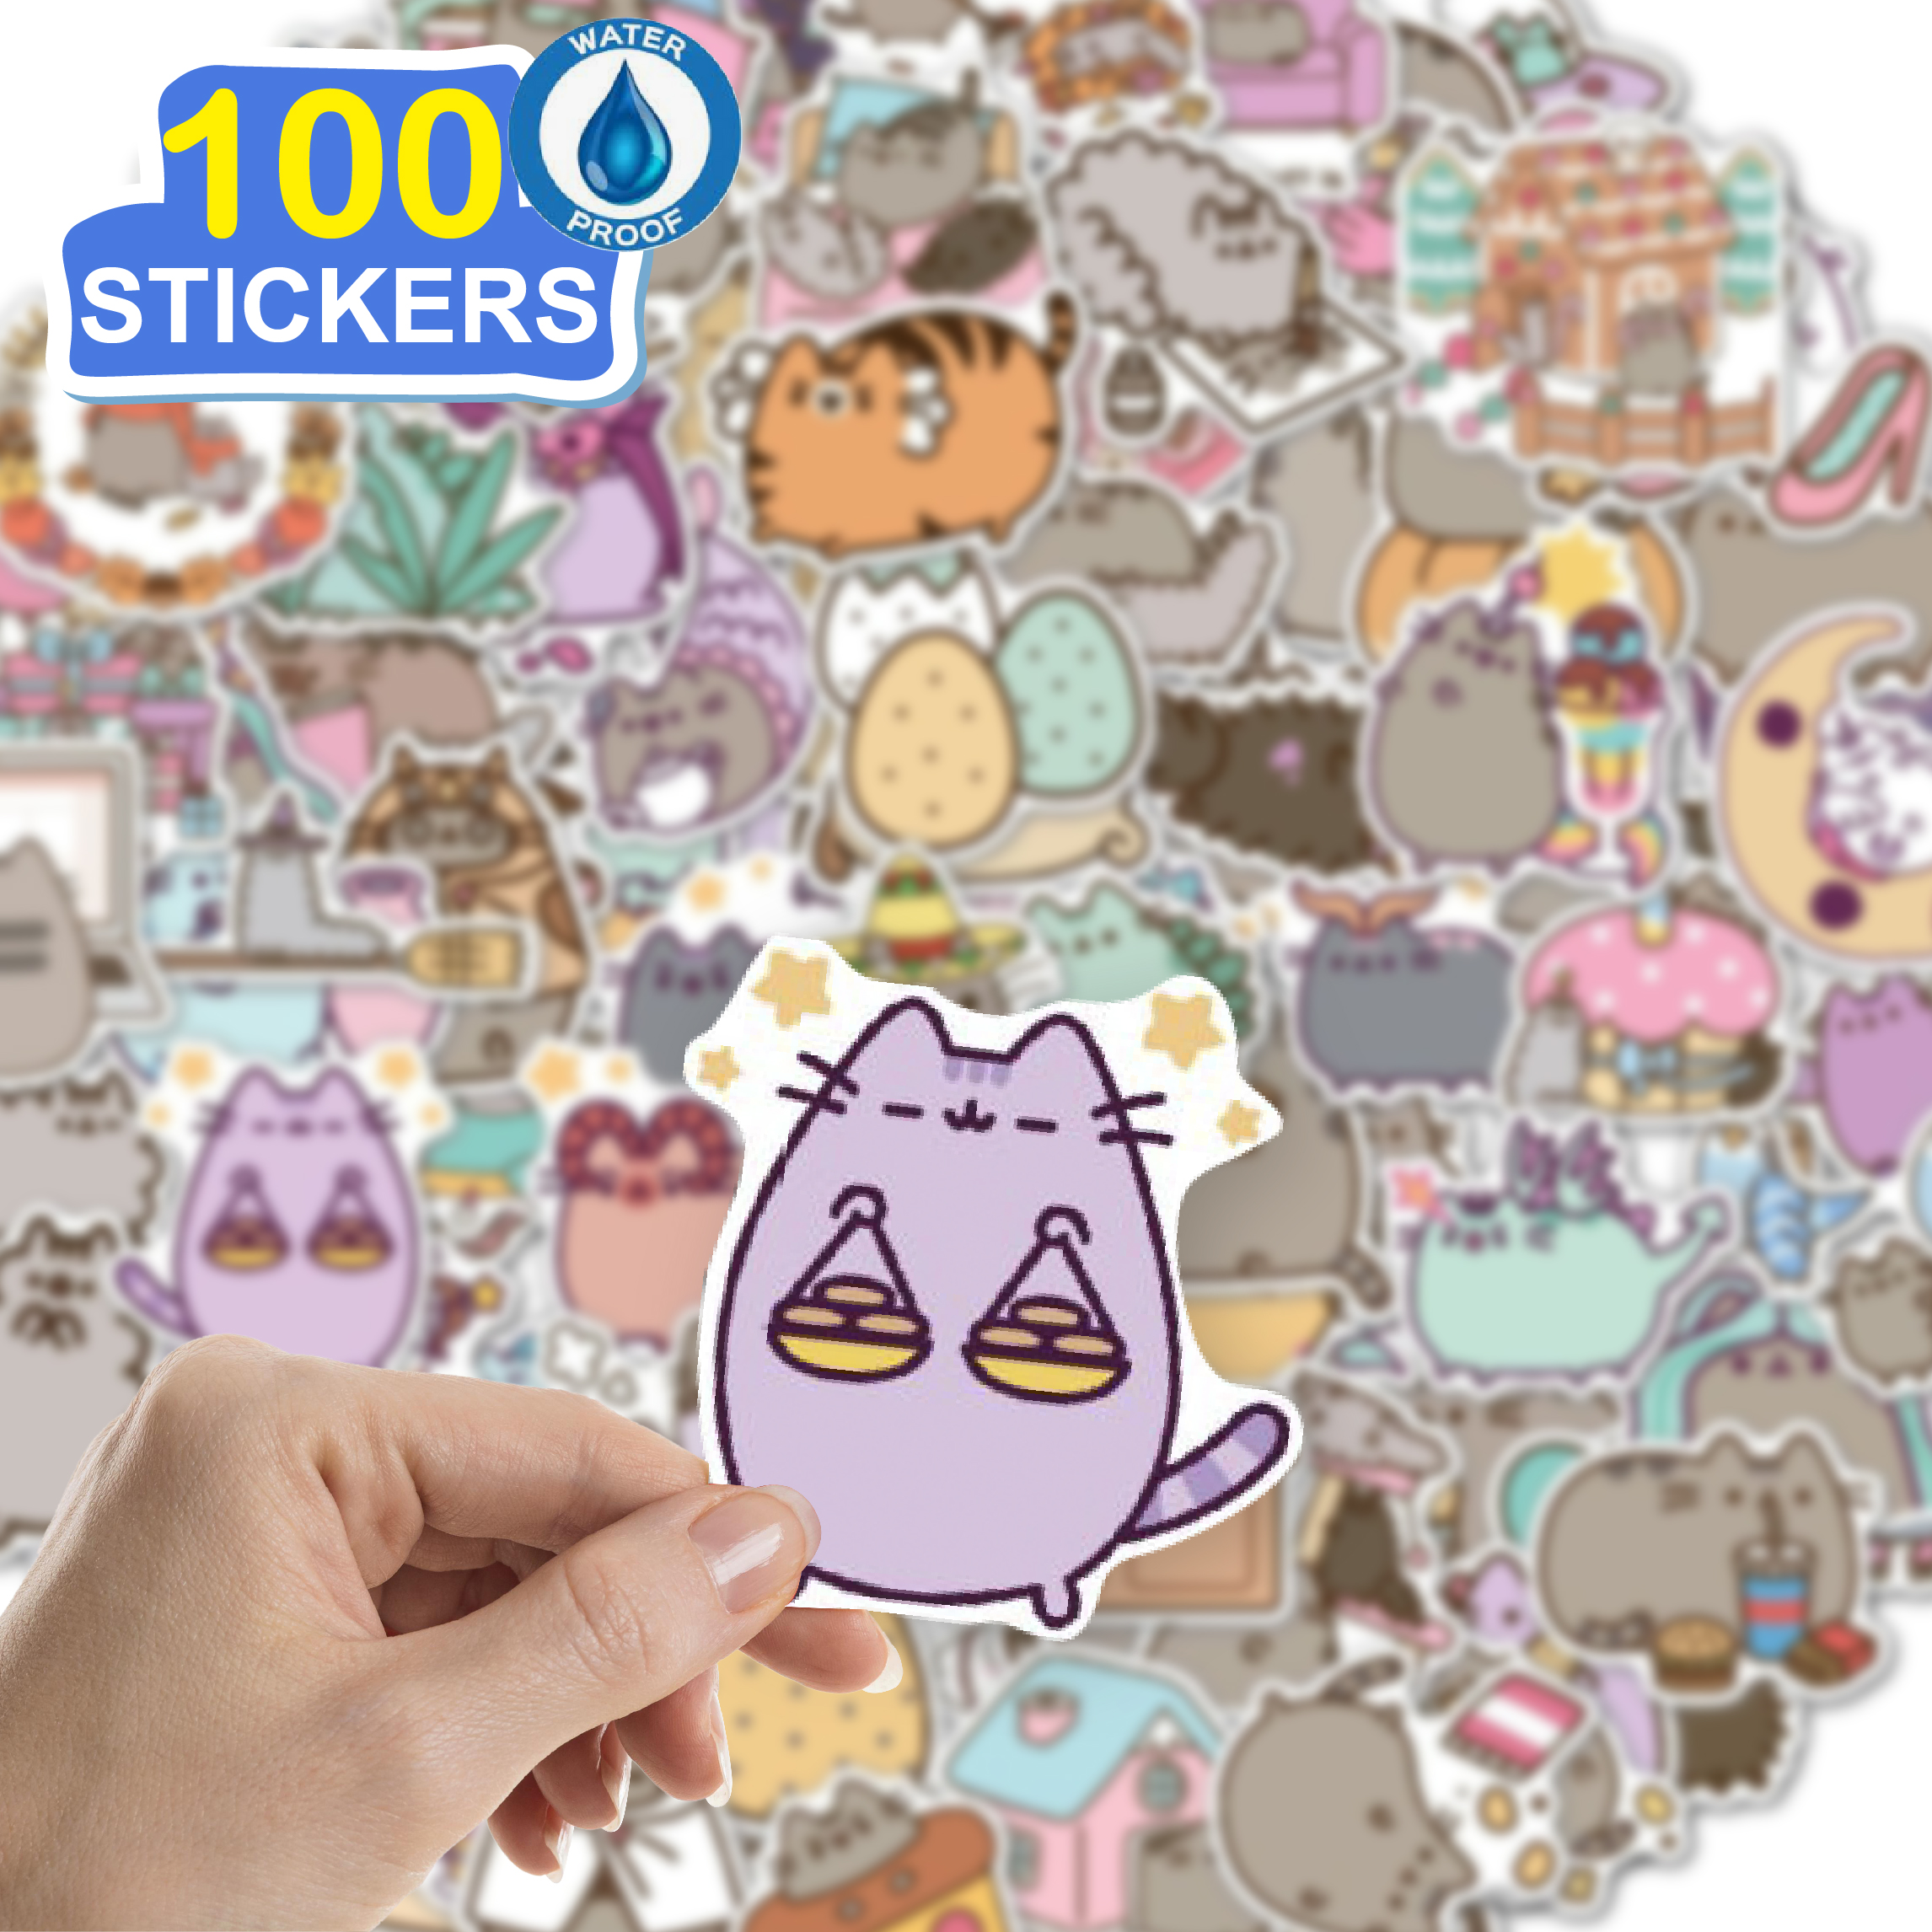 100 Stickers hoạt hình mèo ú hình dán dễ thương trang trí laptop, điện thoại, ipad, cốc nước, sổ tay, vali du lịch, scooter, ván trược - Chống thấm nước - FiDi